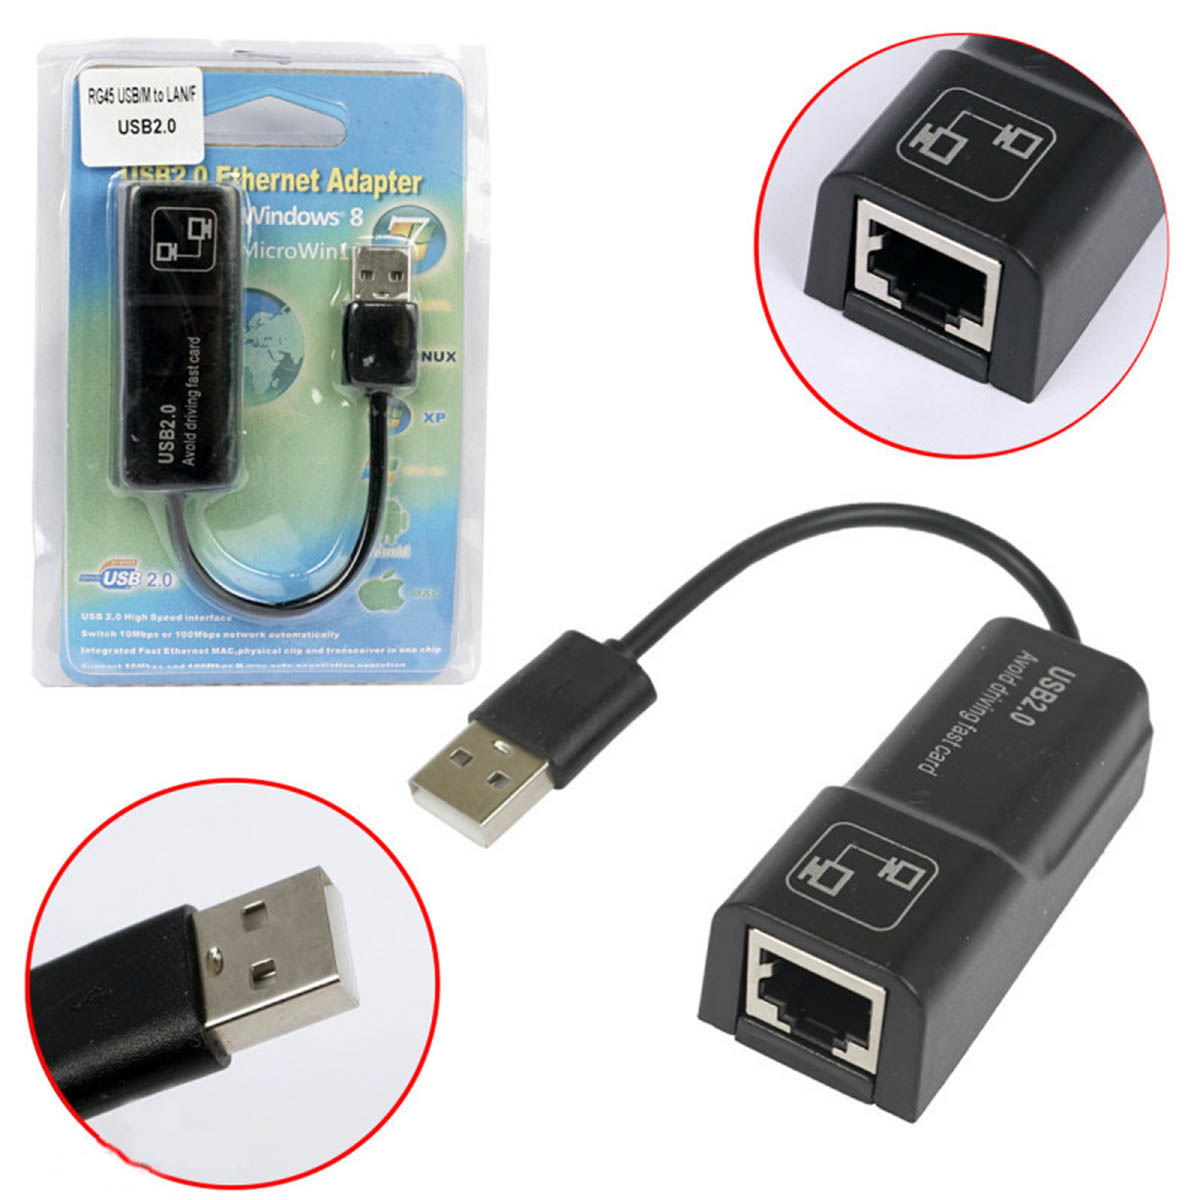 Адаптер, переходник USB 2.0 AM на Ethernet LAN RJ-45, скорость до 100 Мбит/с, цвет черный